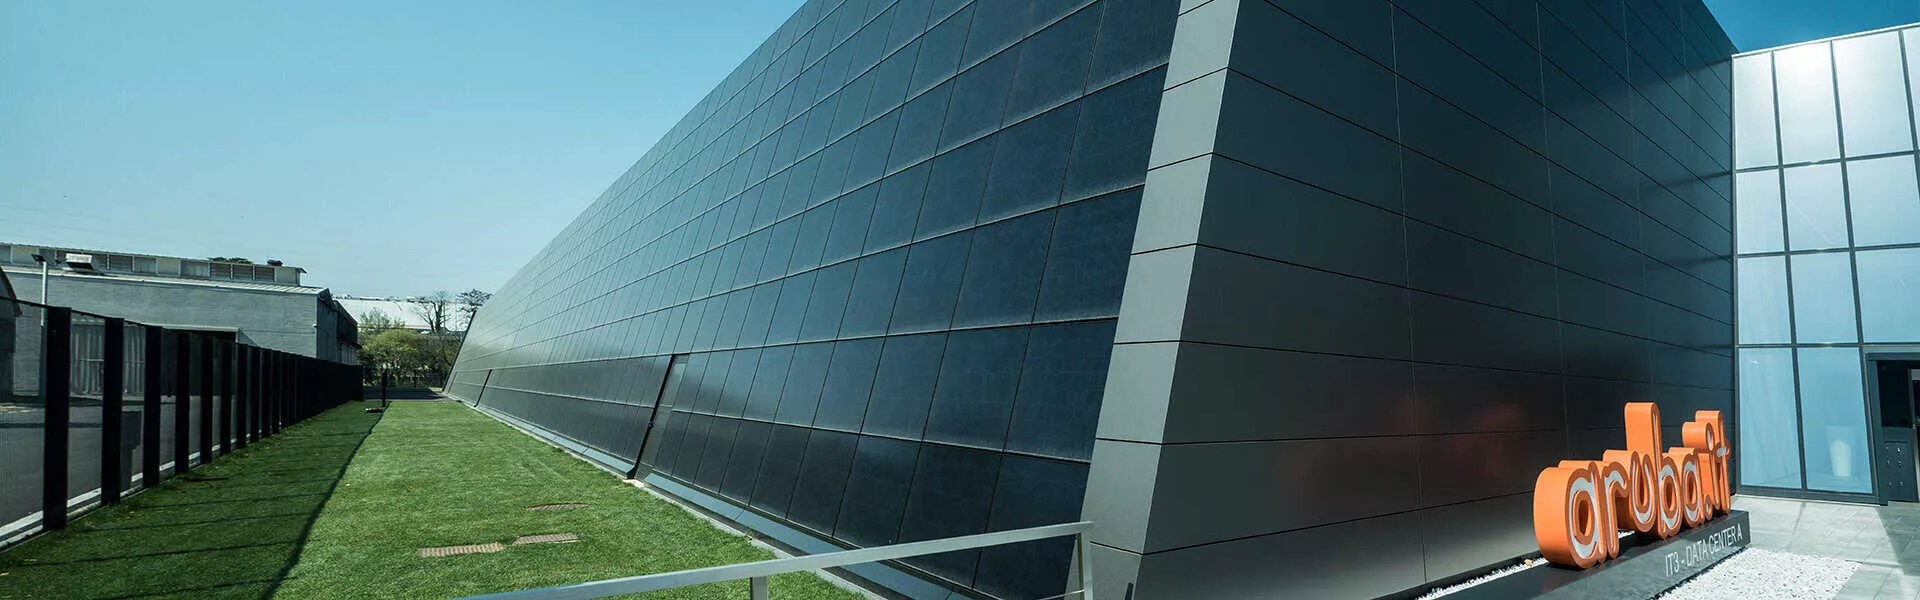 data center aruba in Italia con pannelli fotovoltaici SunPower